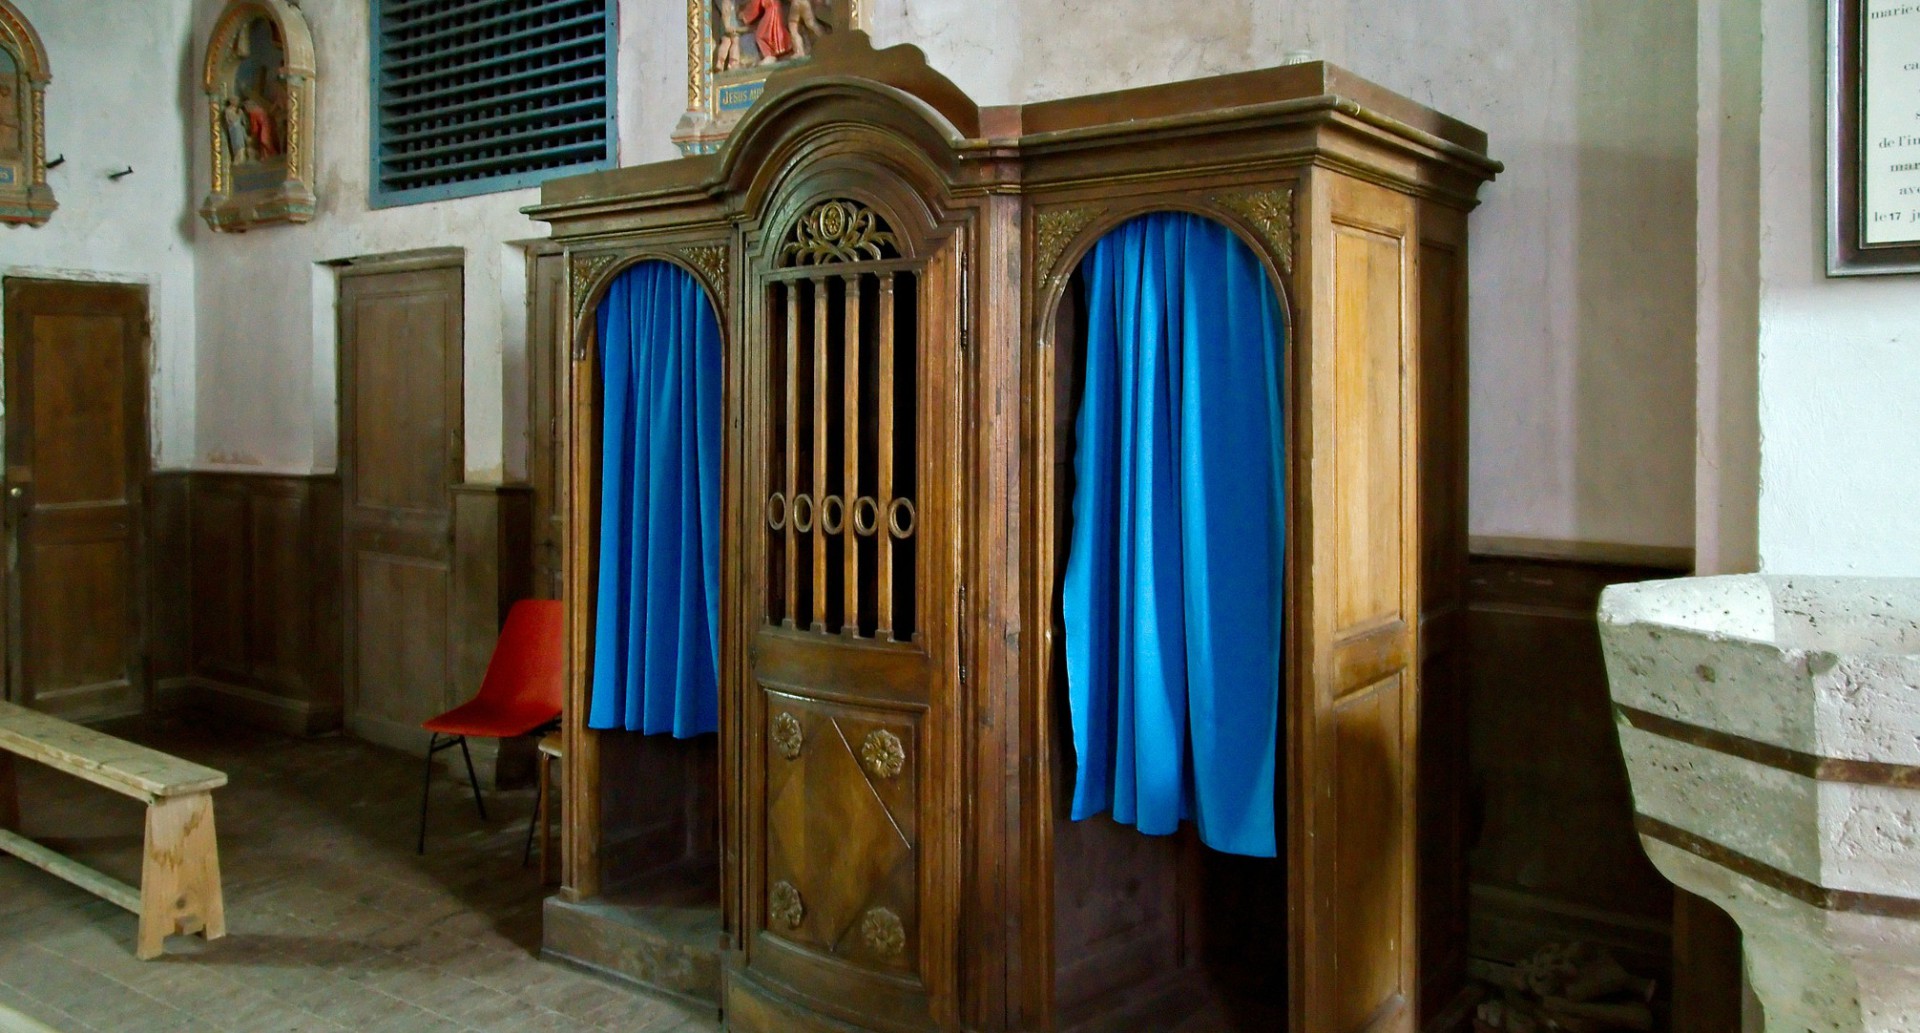 La confession est entourée de règles très rigoureuses dans l'Eglise catholique (Photo:Frédéric Bisson/Flickr/CC BY 2.0)